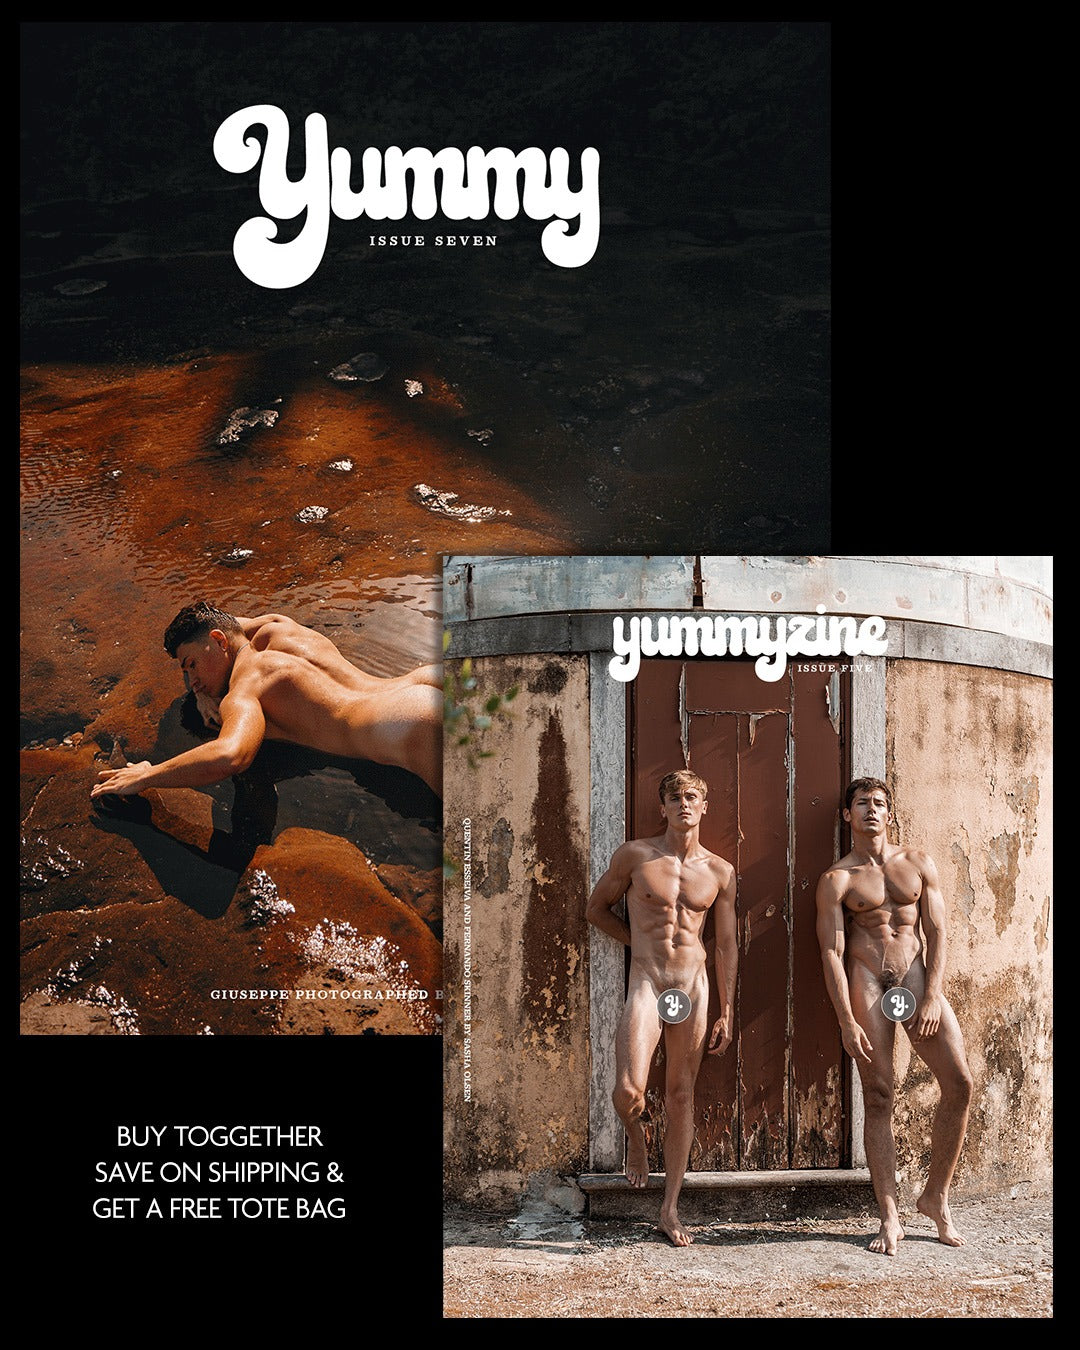 Yummy Issue 7 & Yummyzine Issue 4 (7959061594362)